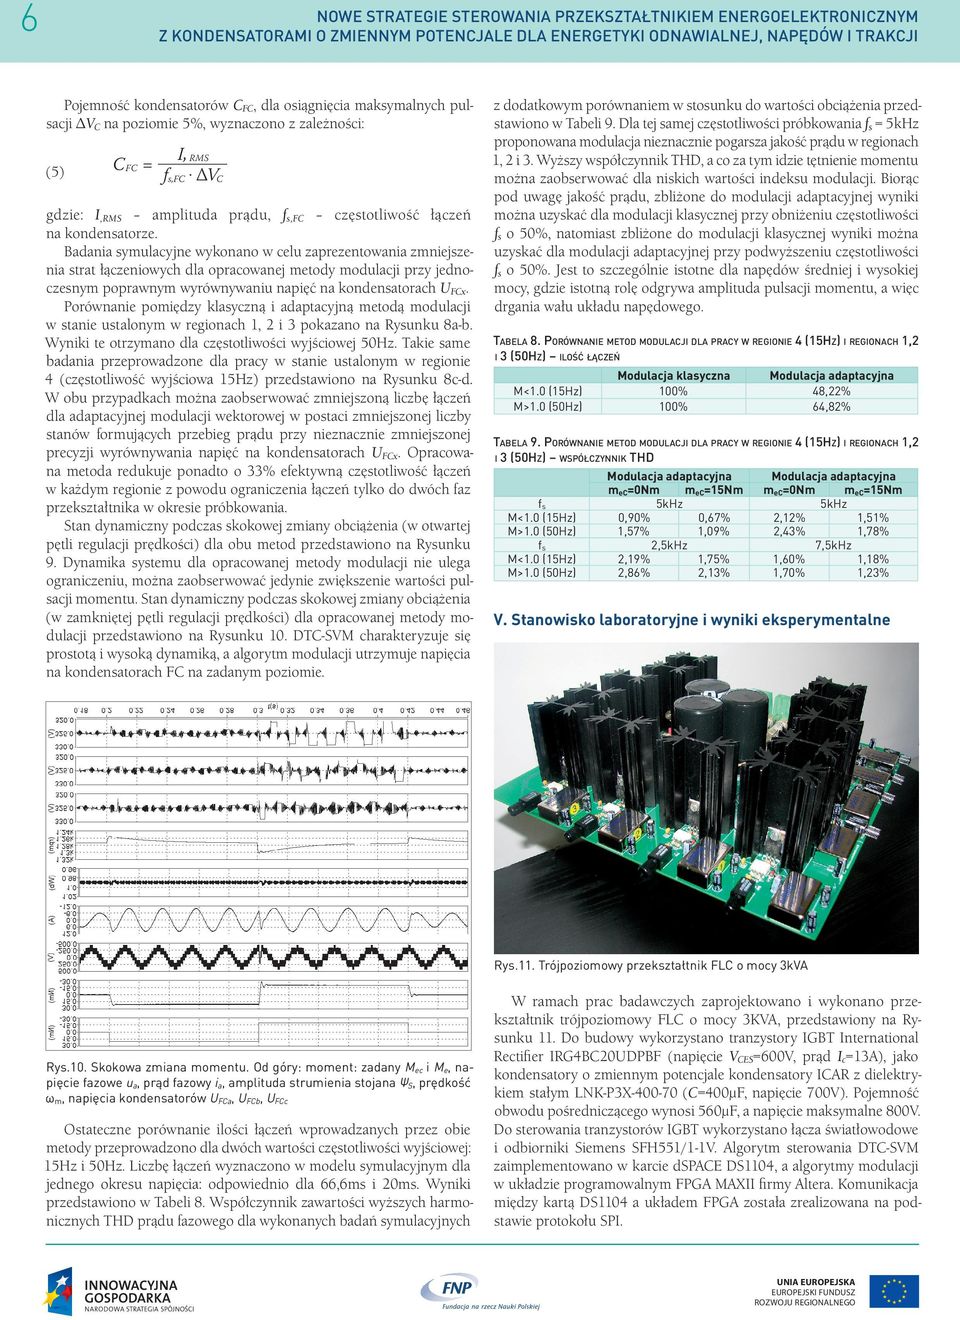 Badania symulacyjne wykonano w celu zaprezentowania zmniejszenia strat łączeniowych dla opracowanej metody modulacji przy jednoczesnym poprawnym wyrównywaniu napięć na kondensatorach UFCx.